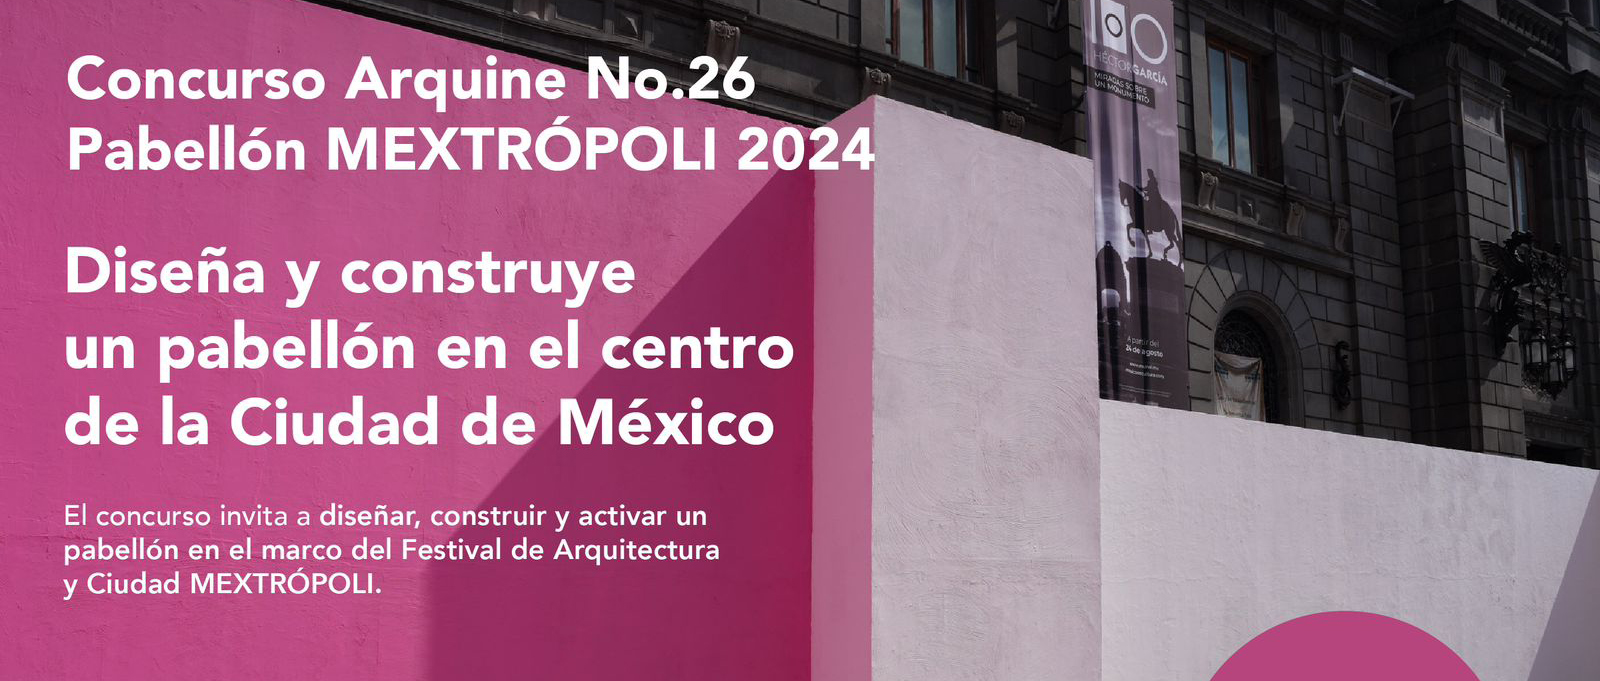 第26届 Arquine 国际设计竞赛：MEXTRÓPOLI 展馆-CNYISAI艺赛